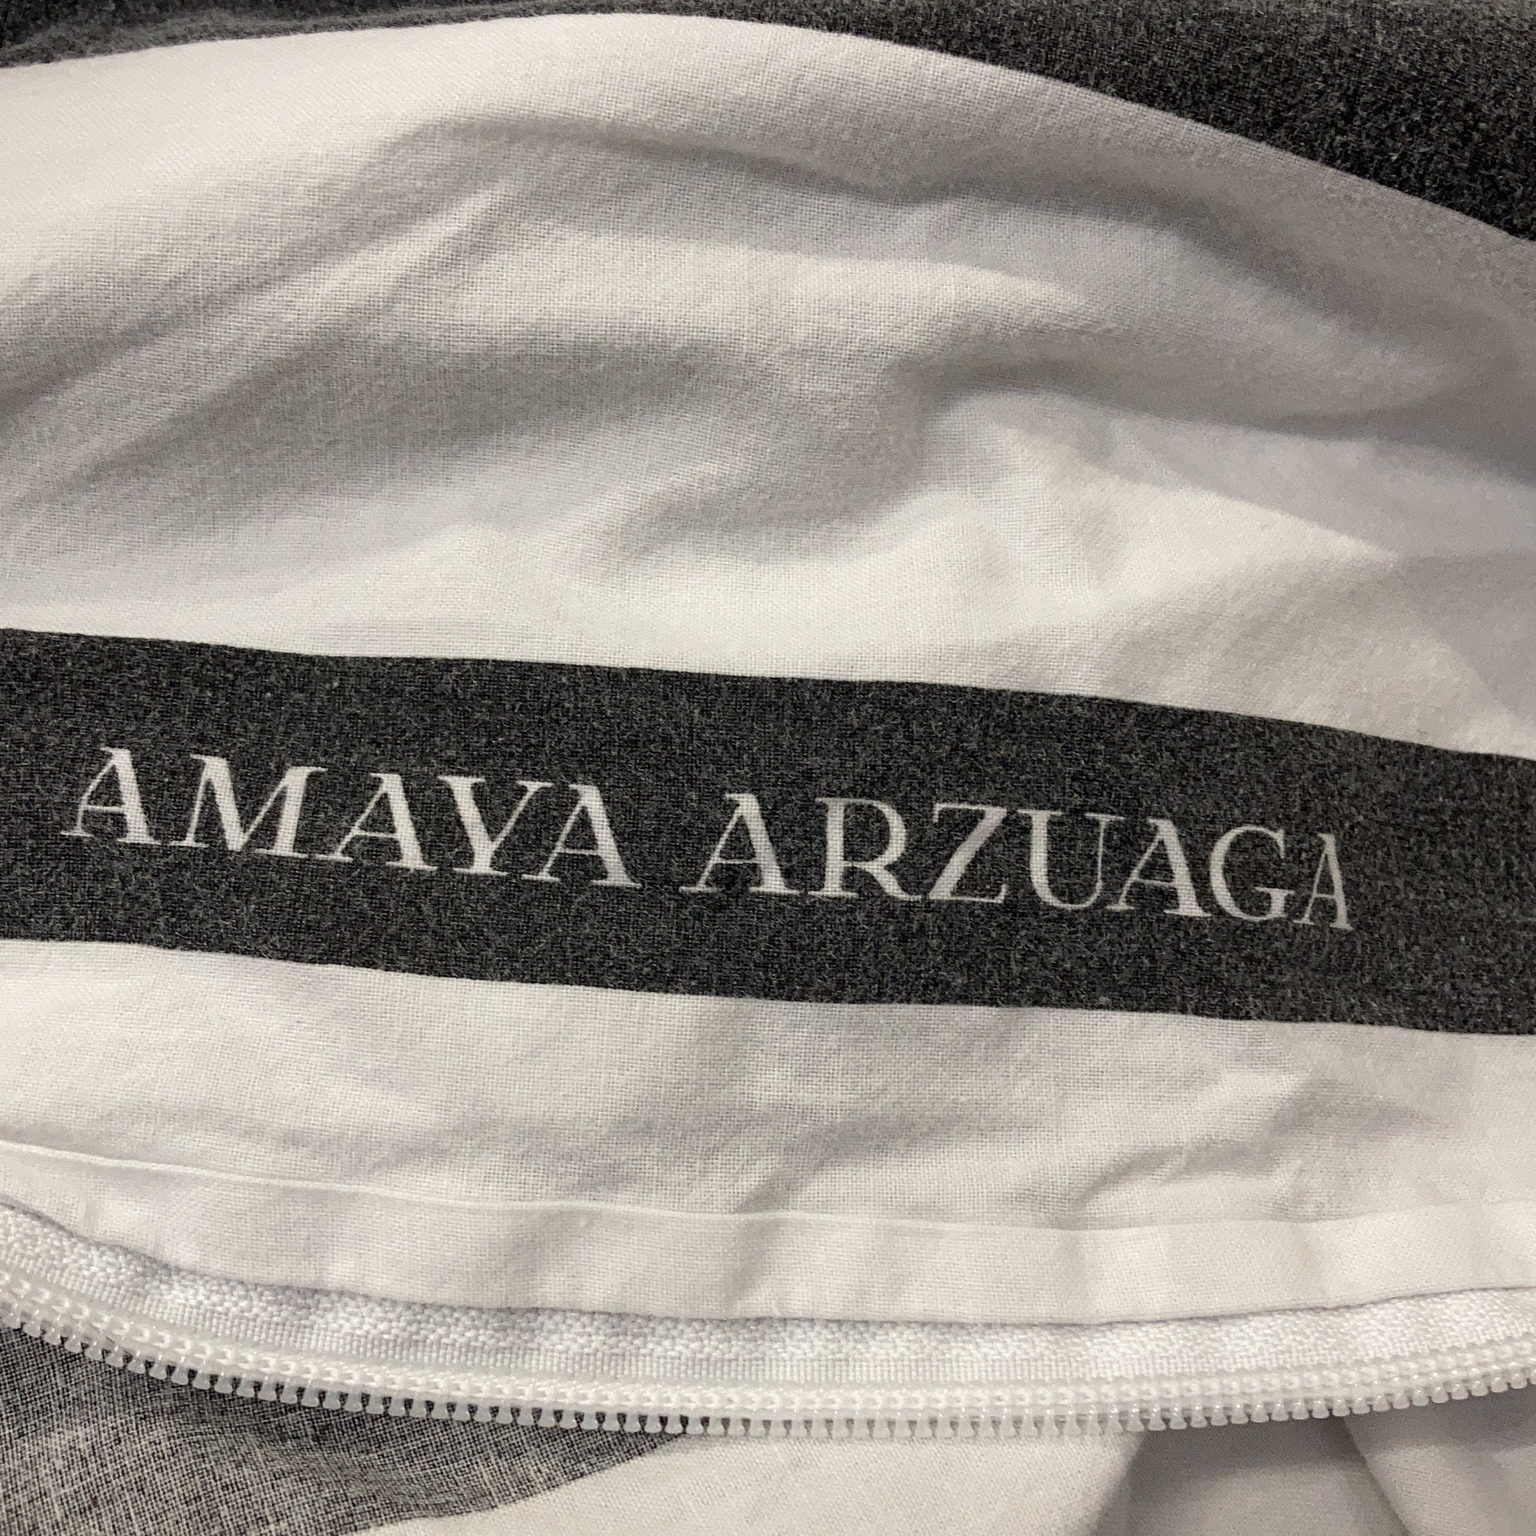 Amaya Arzuaga